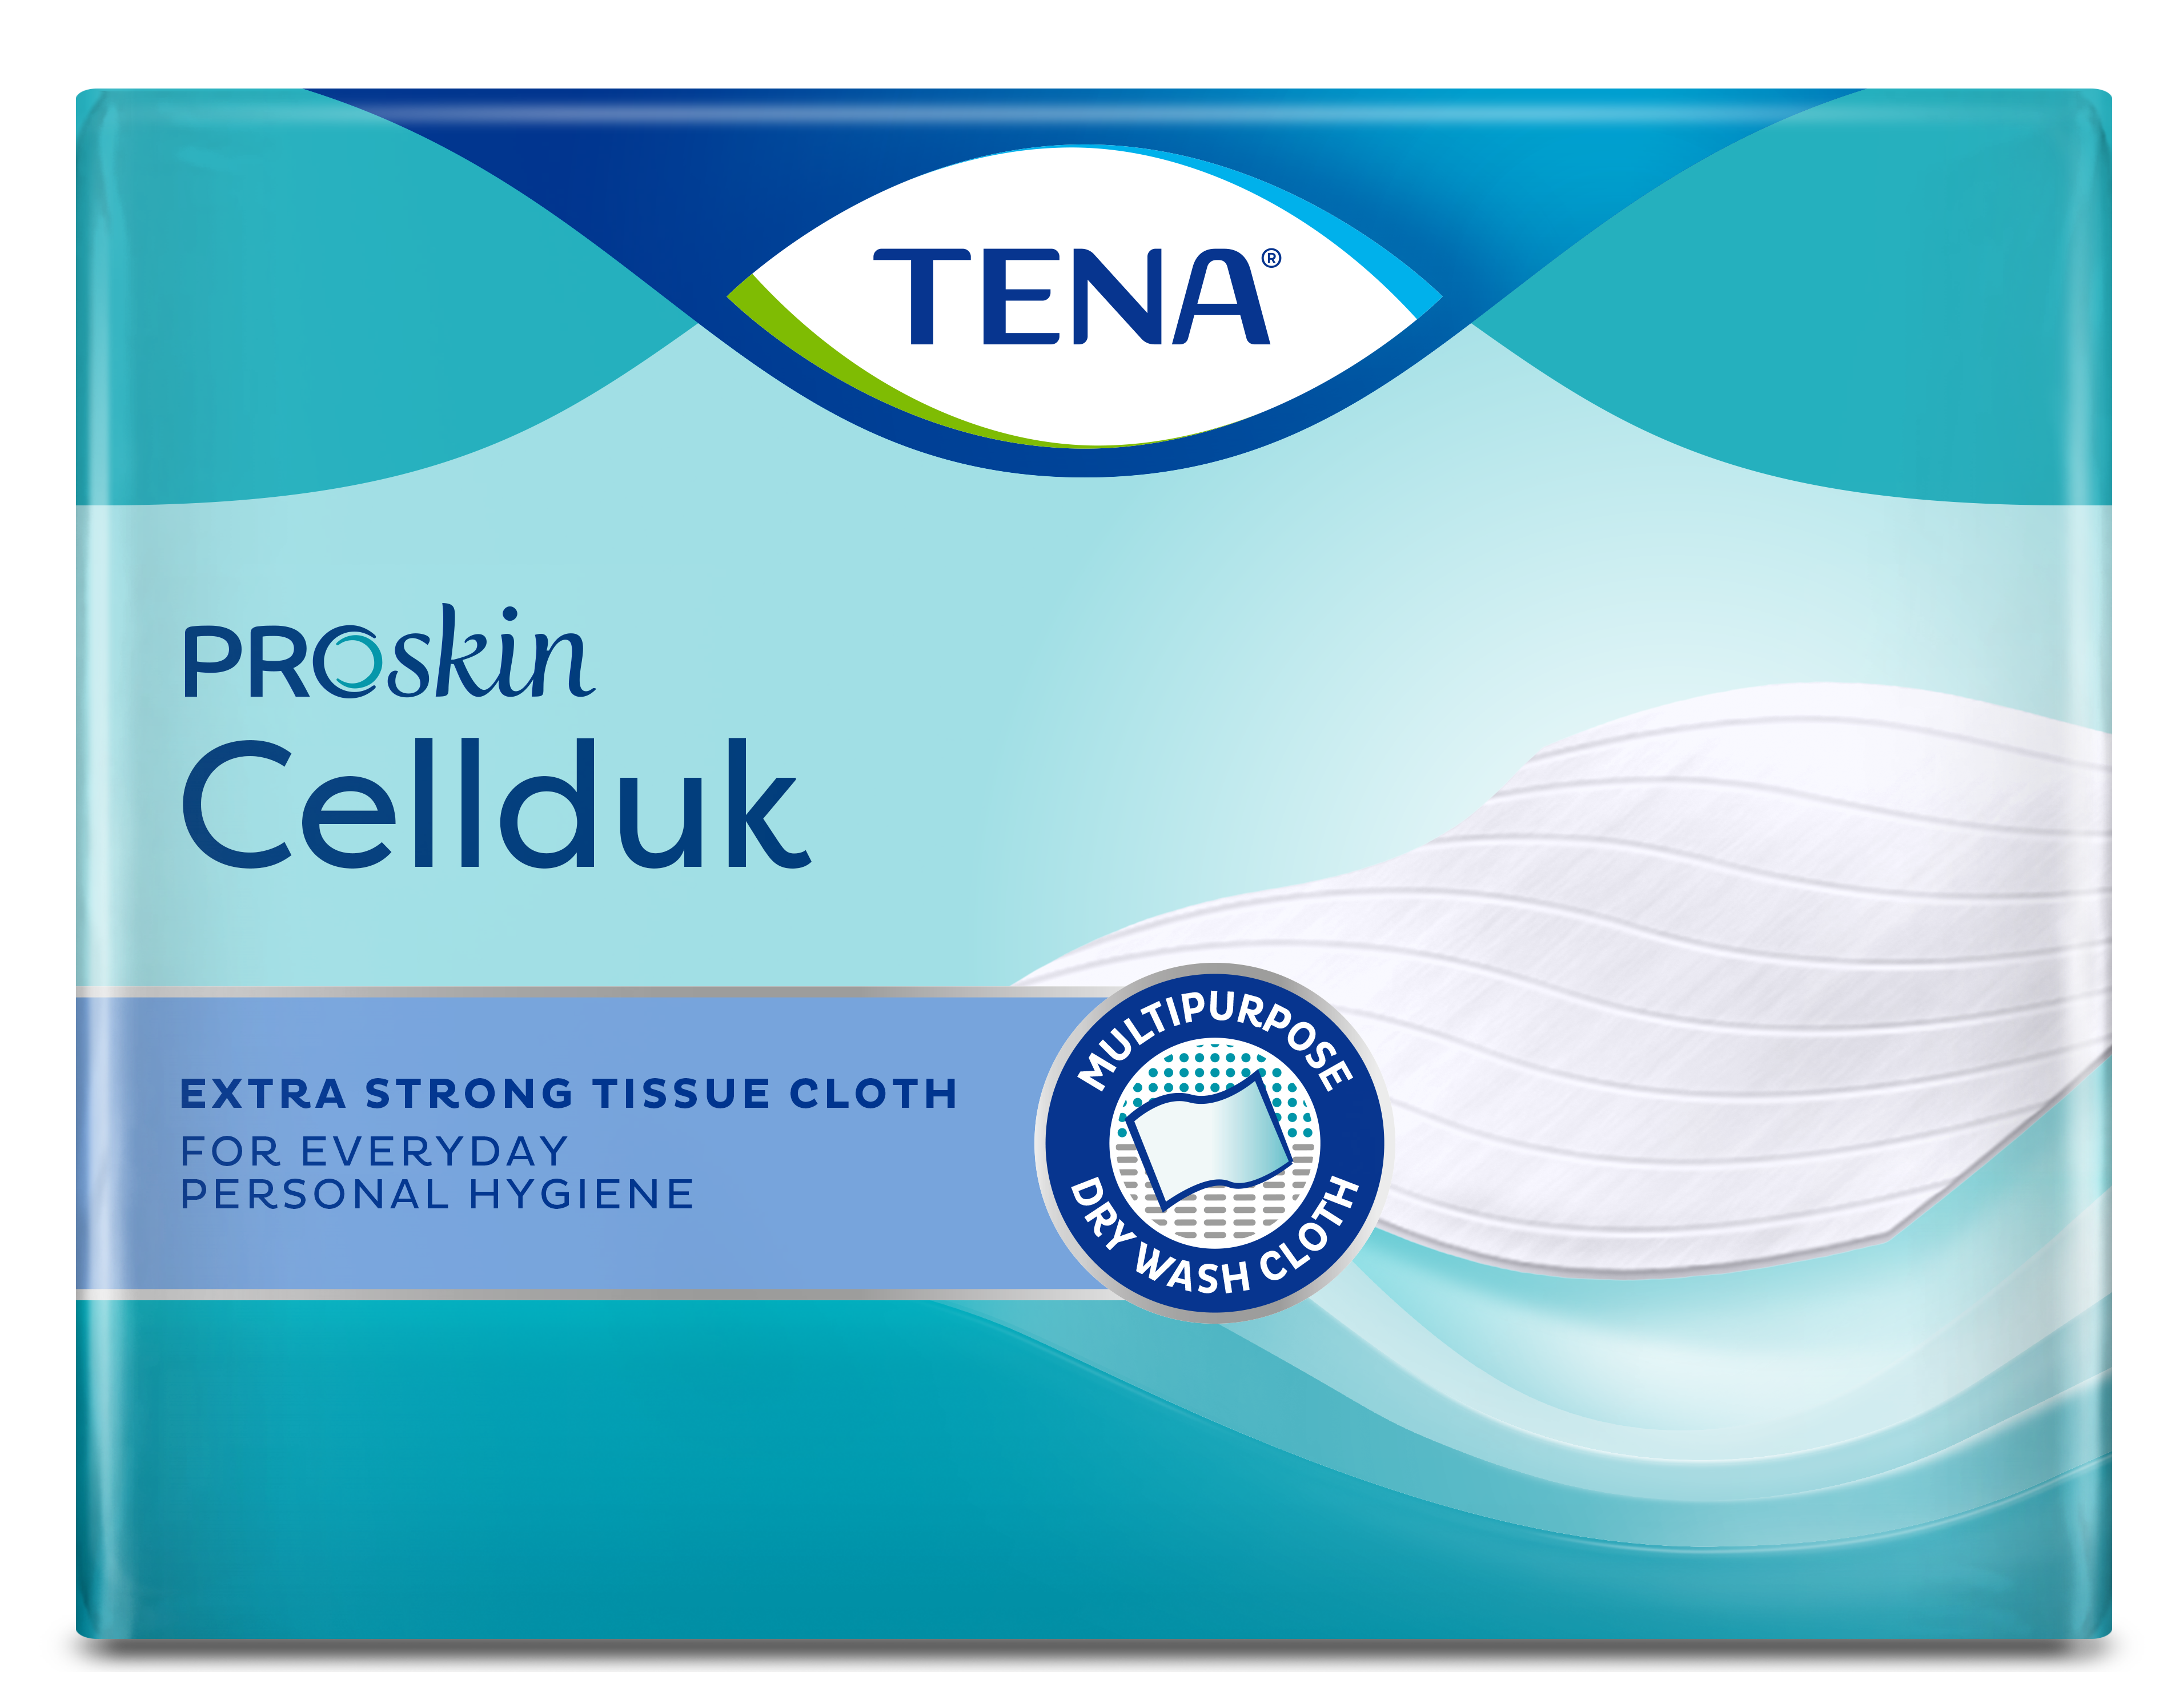 TENA ProSkin Cellduk  Klassisk engangsvaskeklud med utrolig styrke, når den er våd